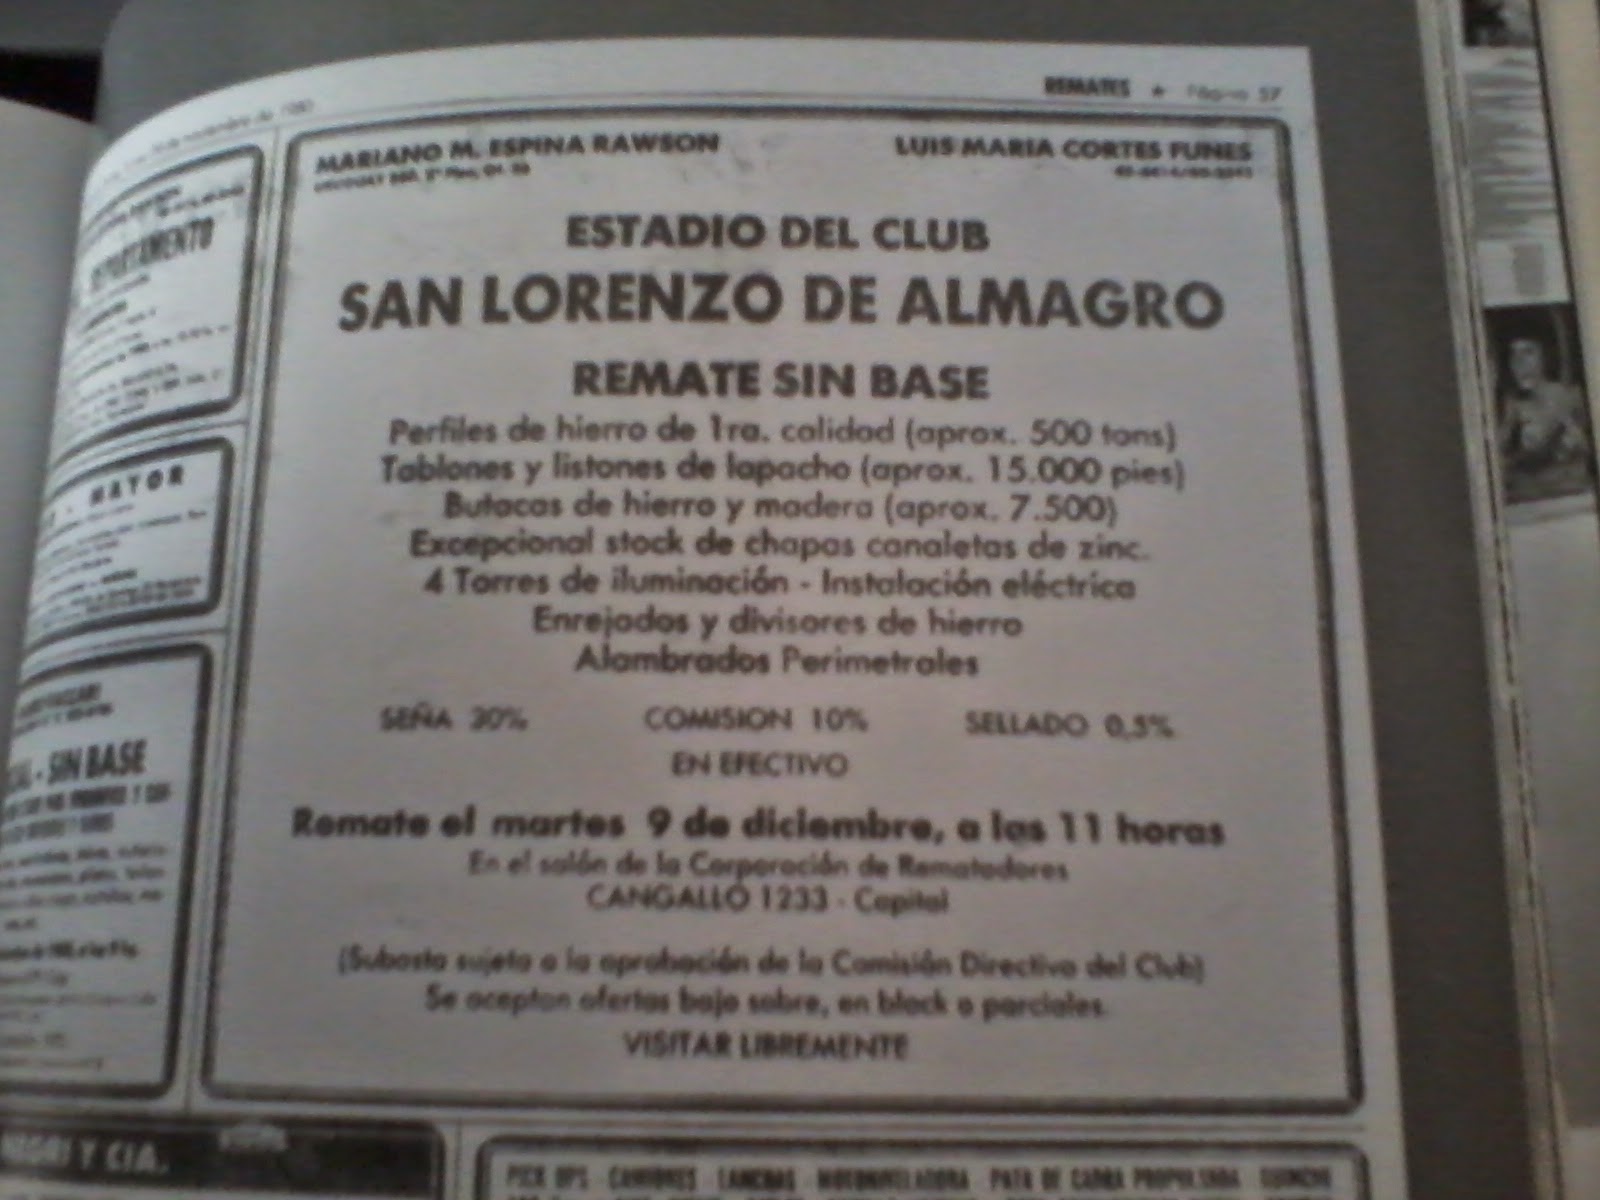 Уведомление об аукционе в газете Clarín (1981г.)